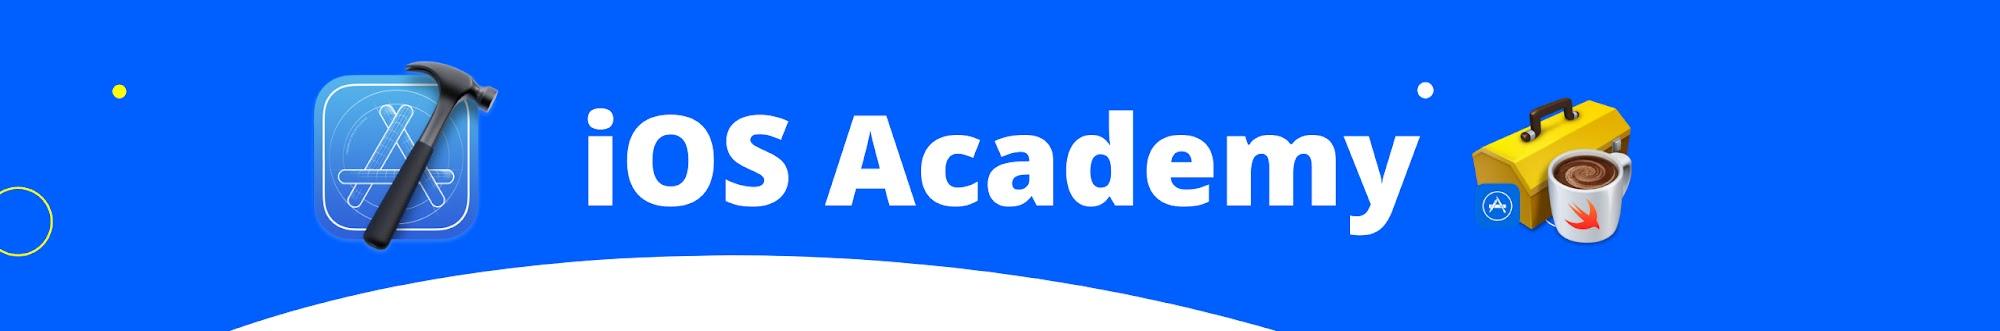 iOS Academy